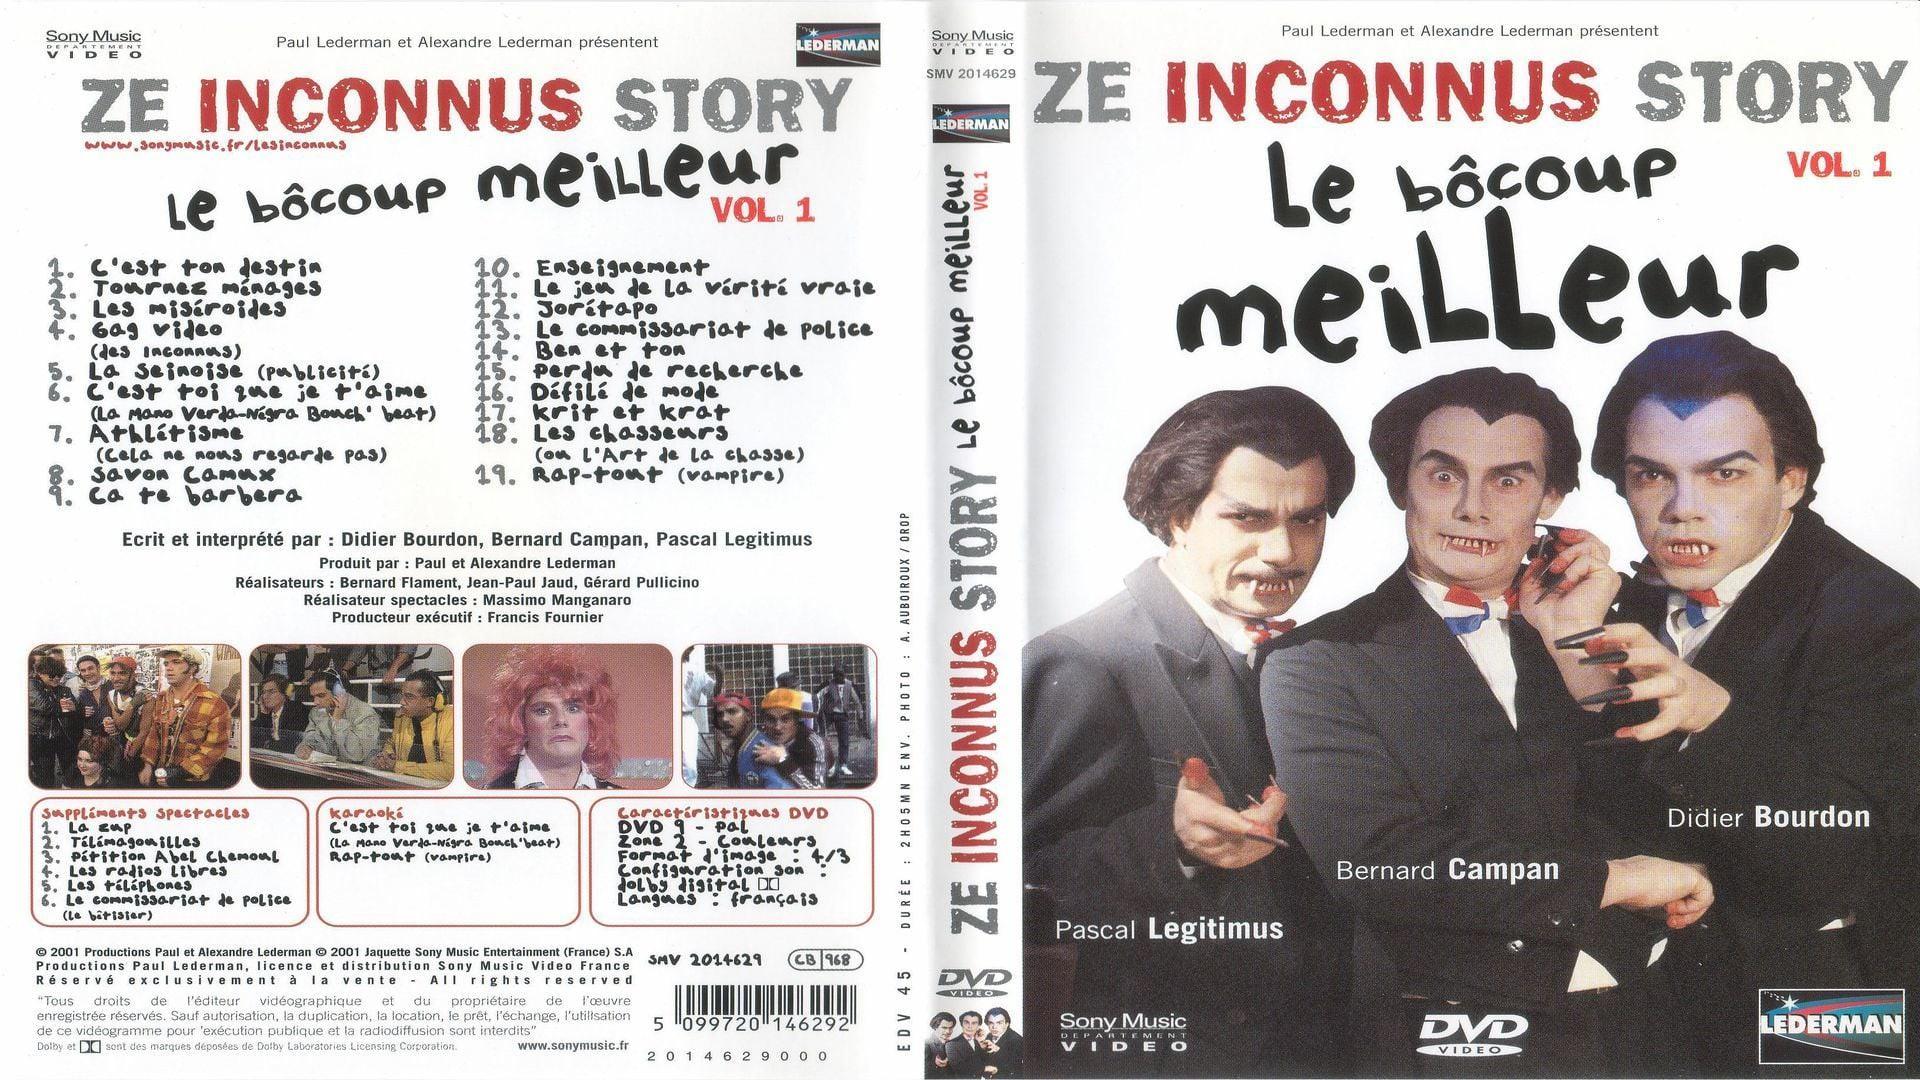 Les Inconnus - Ze Inconnus Story : Le bôcoup meilleur, Vol. 1